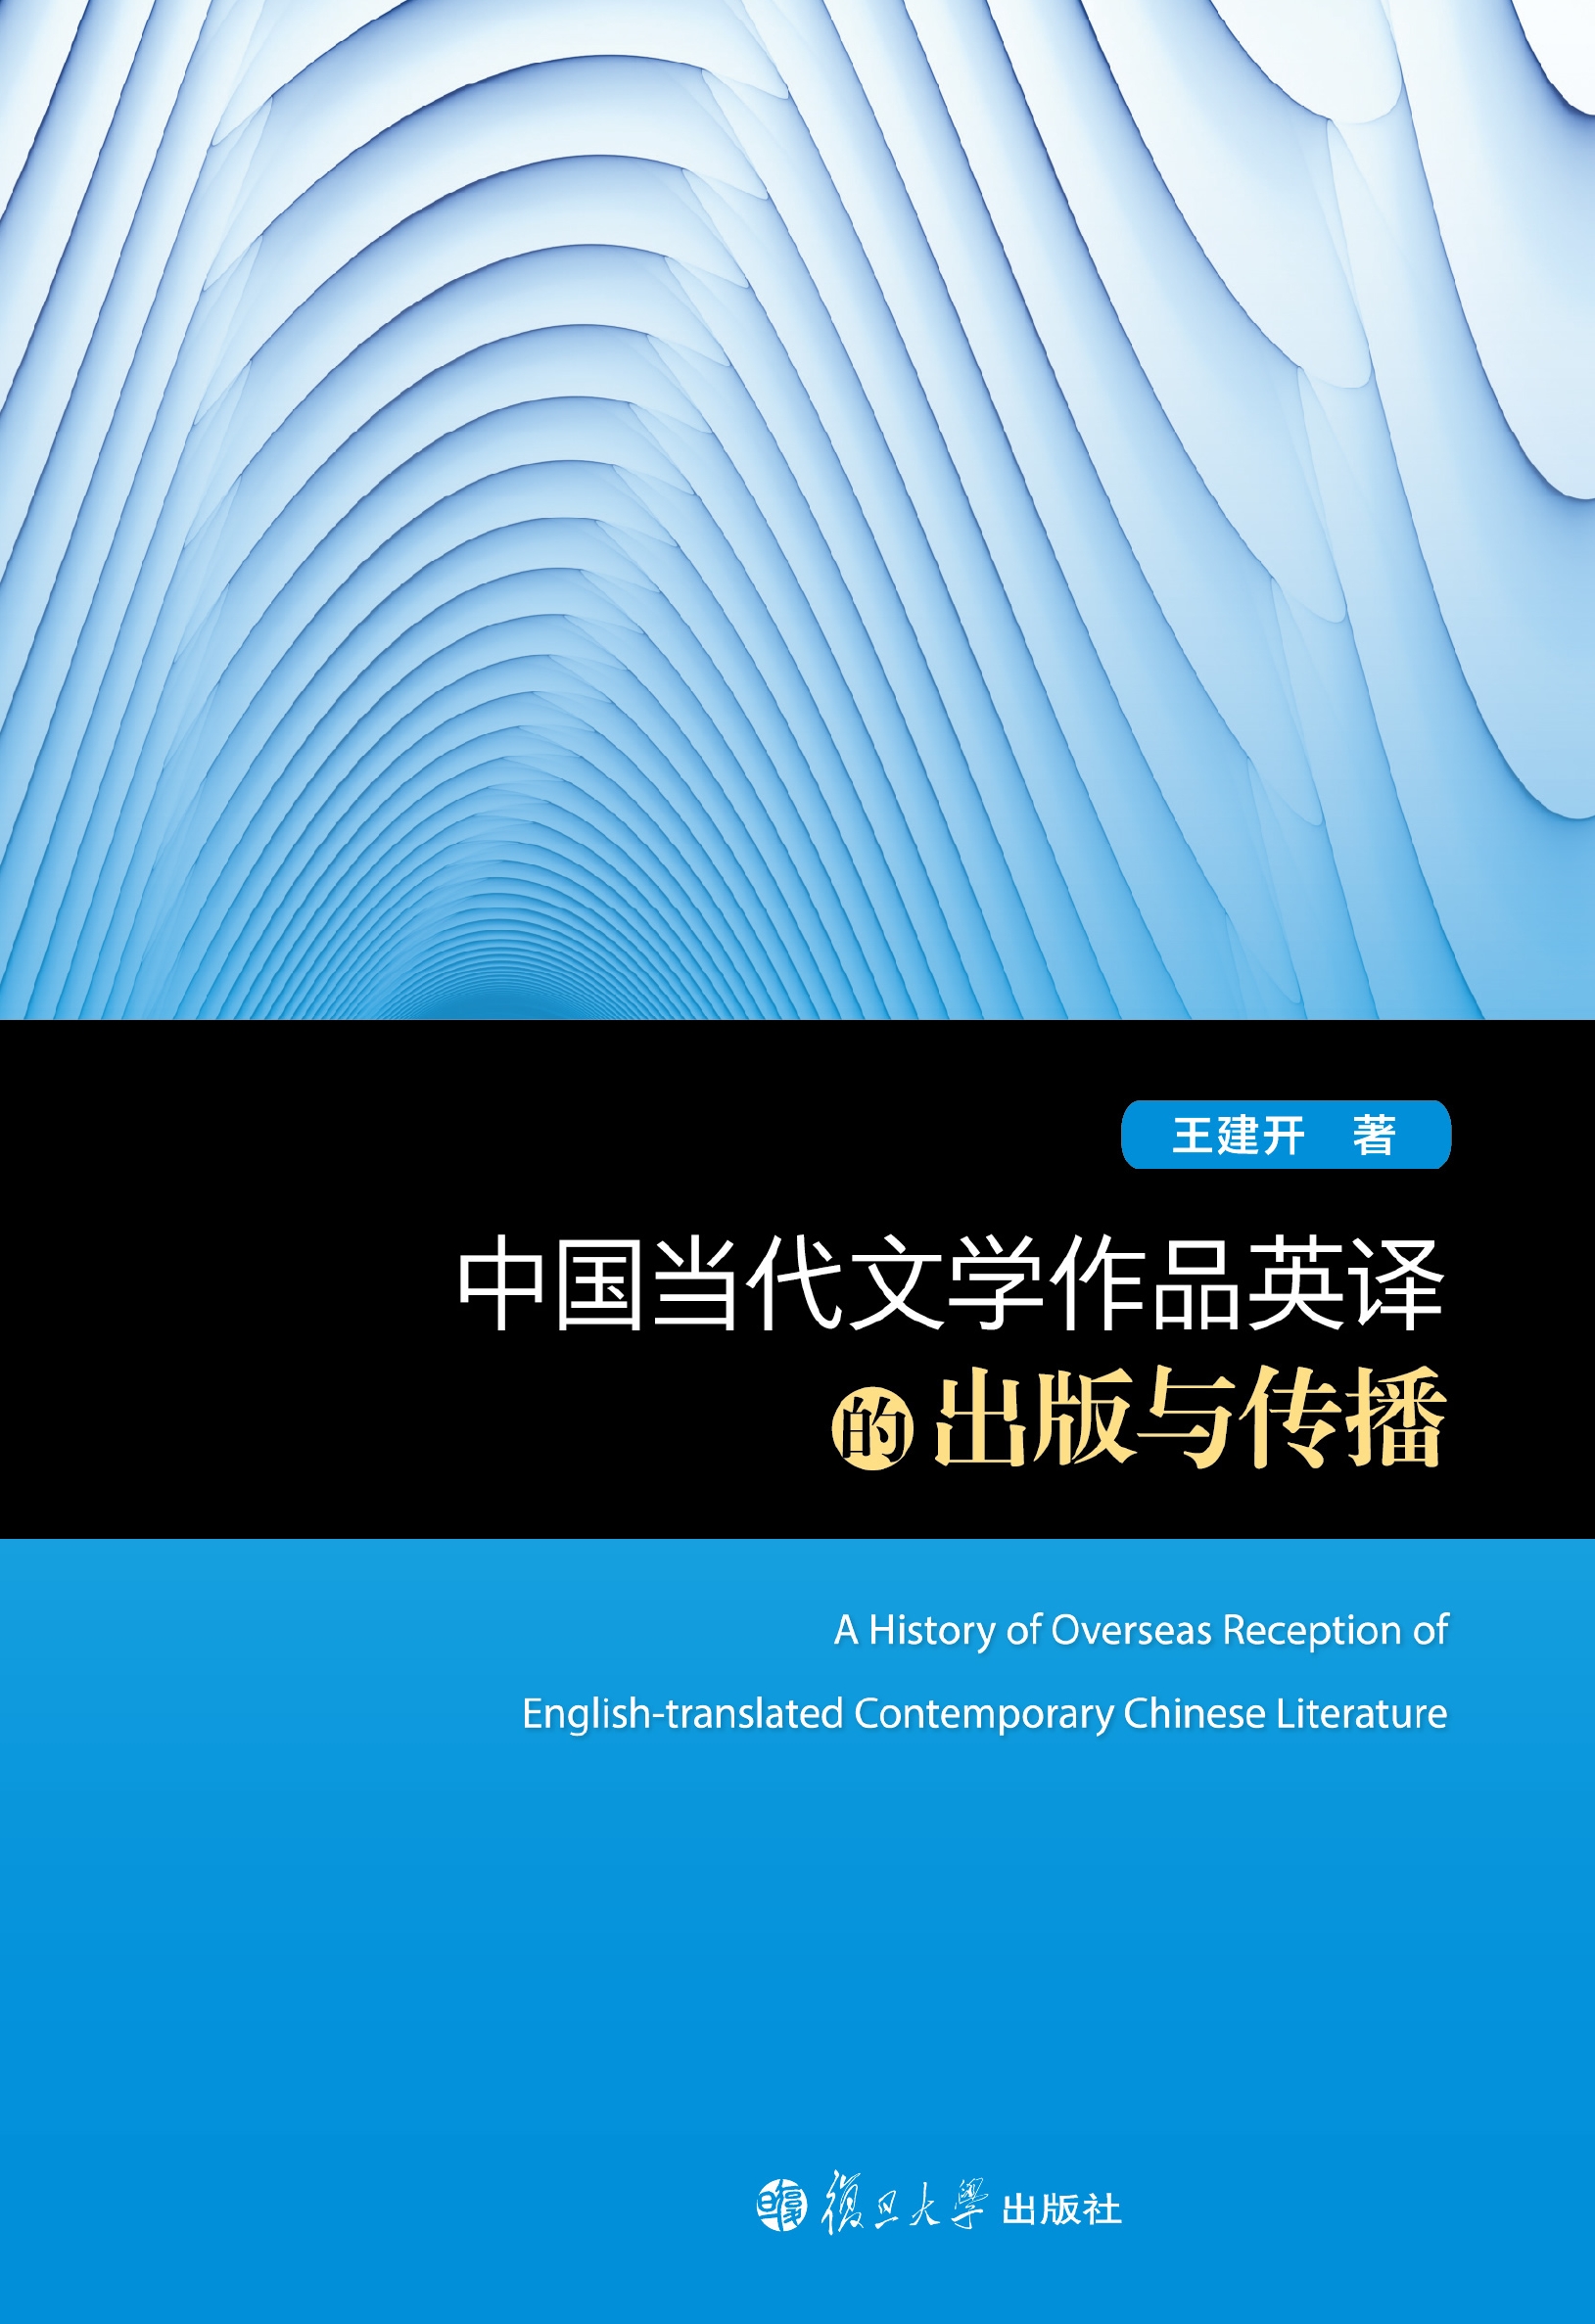 中国当代文学作品英译的出版与传播